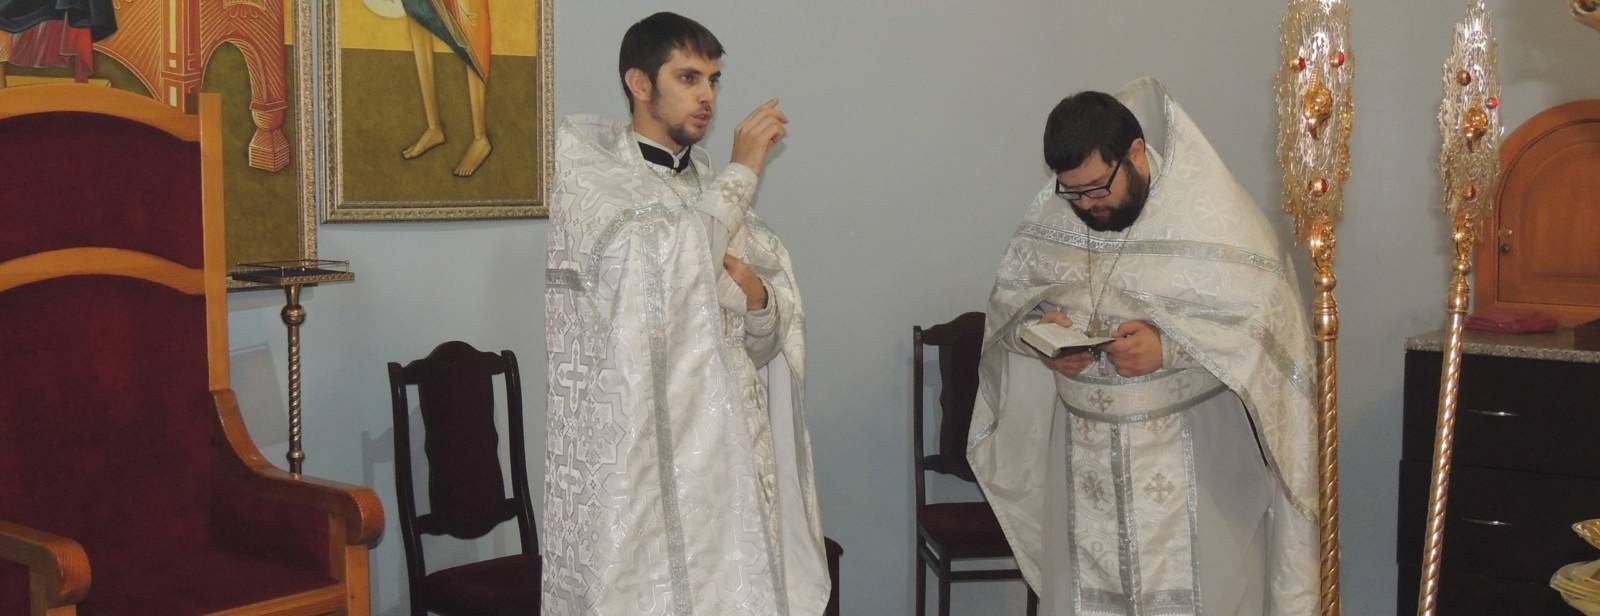 Божественная литургия и Великая вечерня с чтением паримий в Покровском кафедральном соборе.